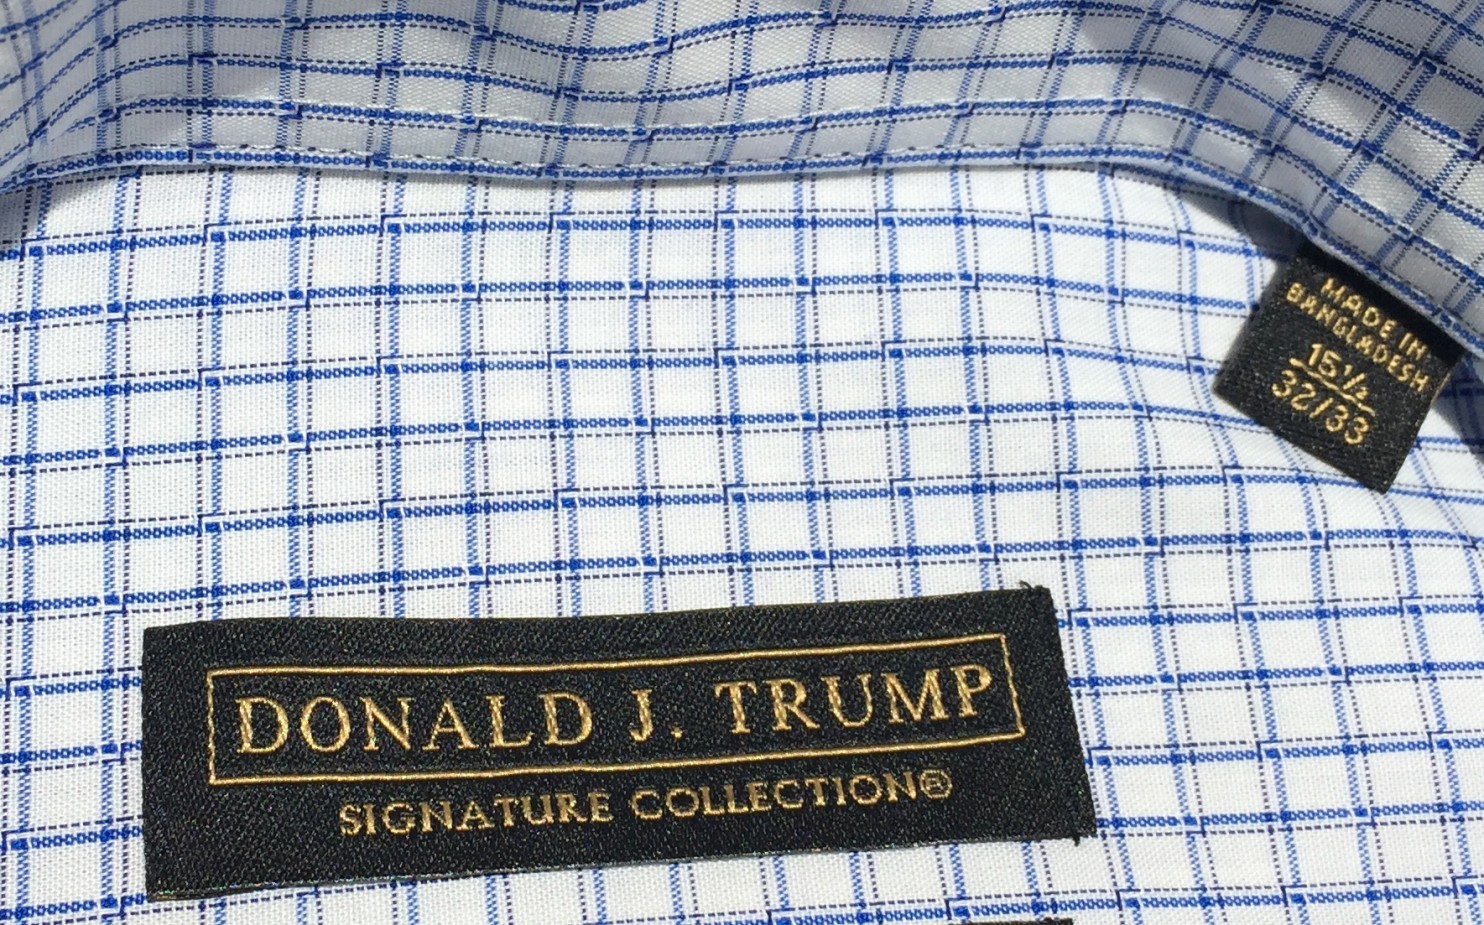 Trump shirt made in Bangladesh